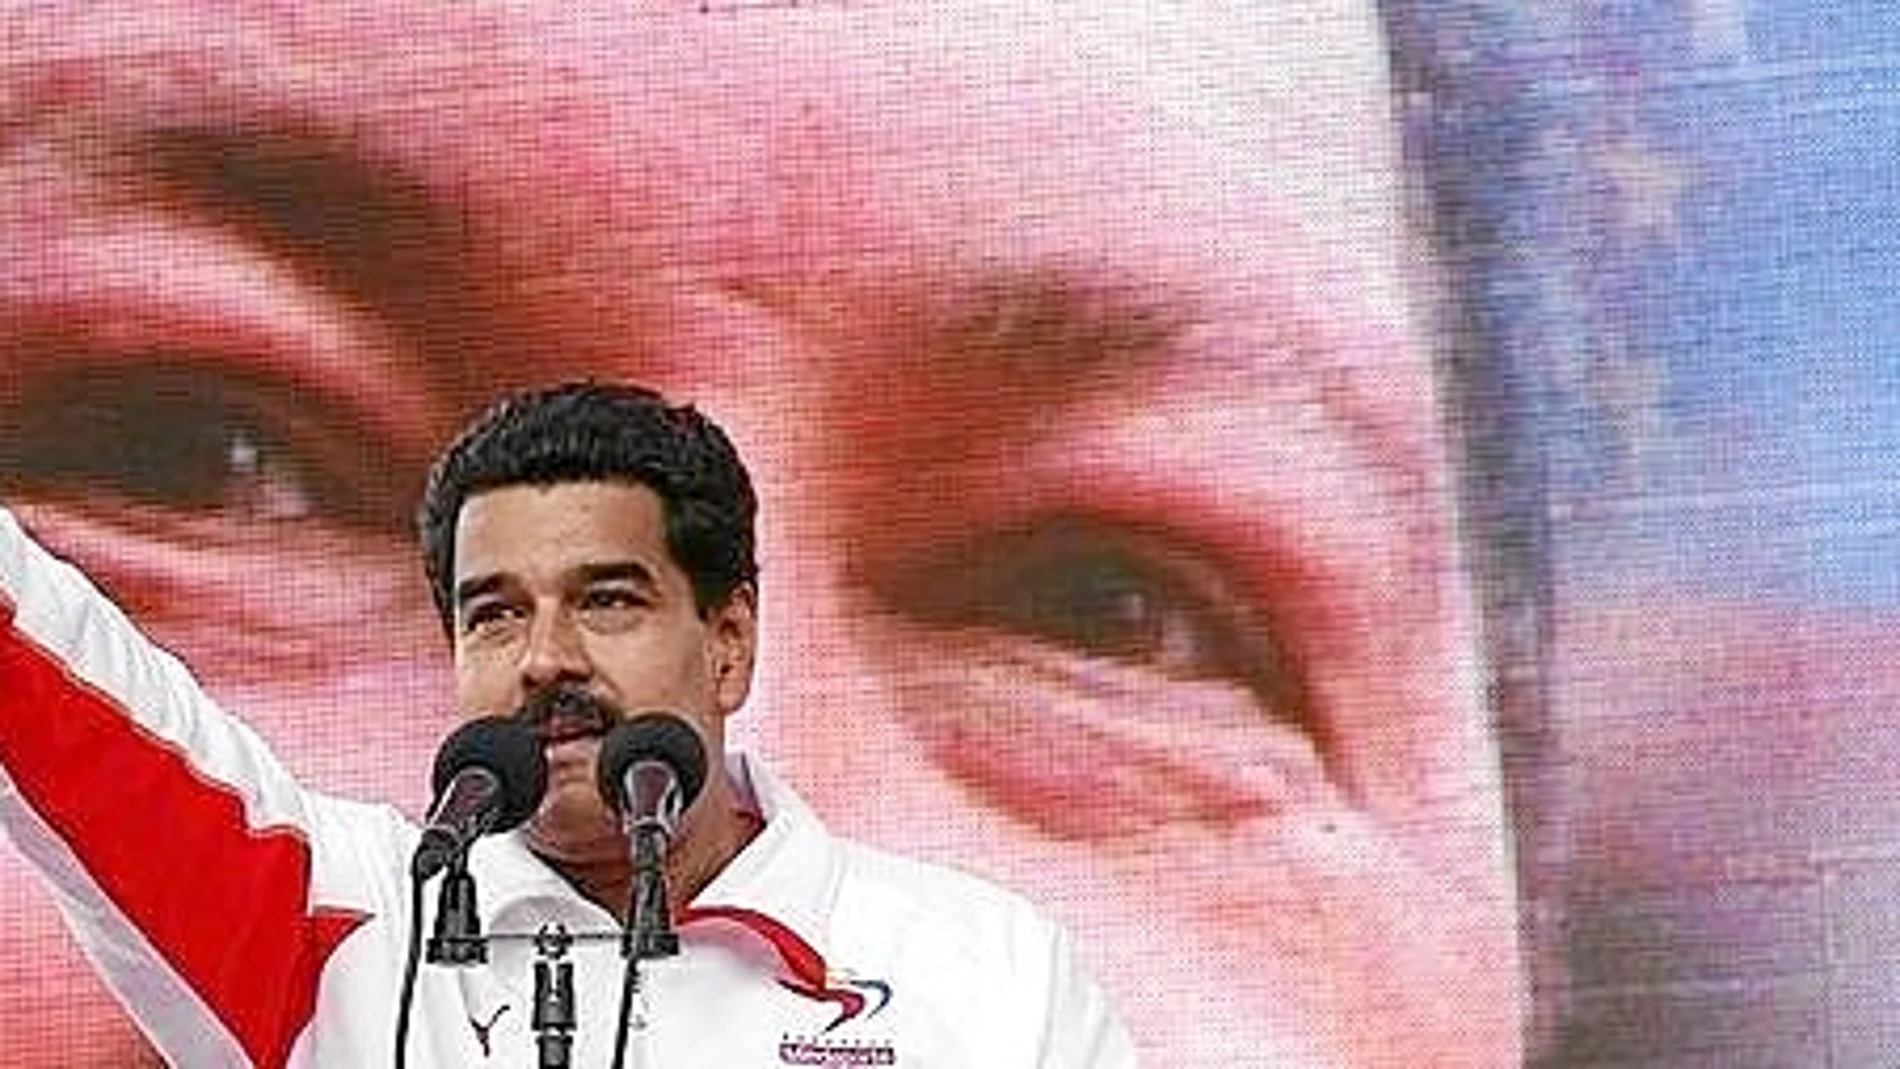 La fundación de Podemos diseñaba hasta finales de 2014 los actos de Maduro